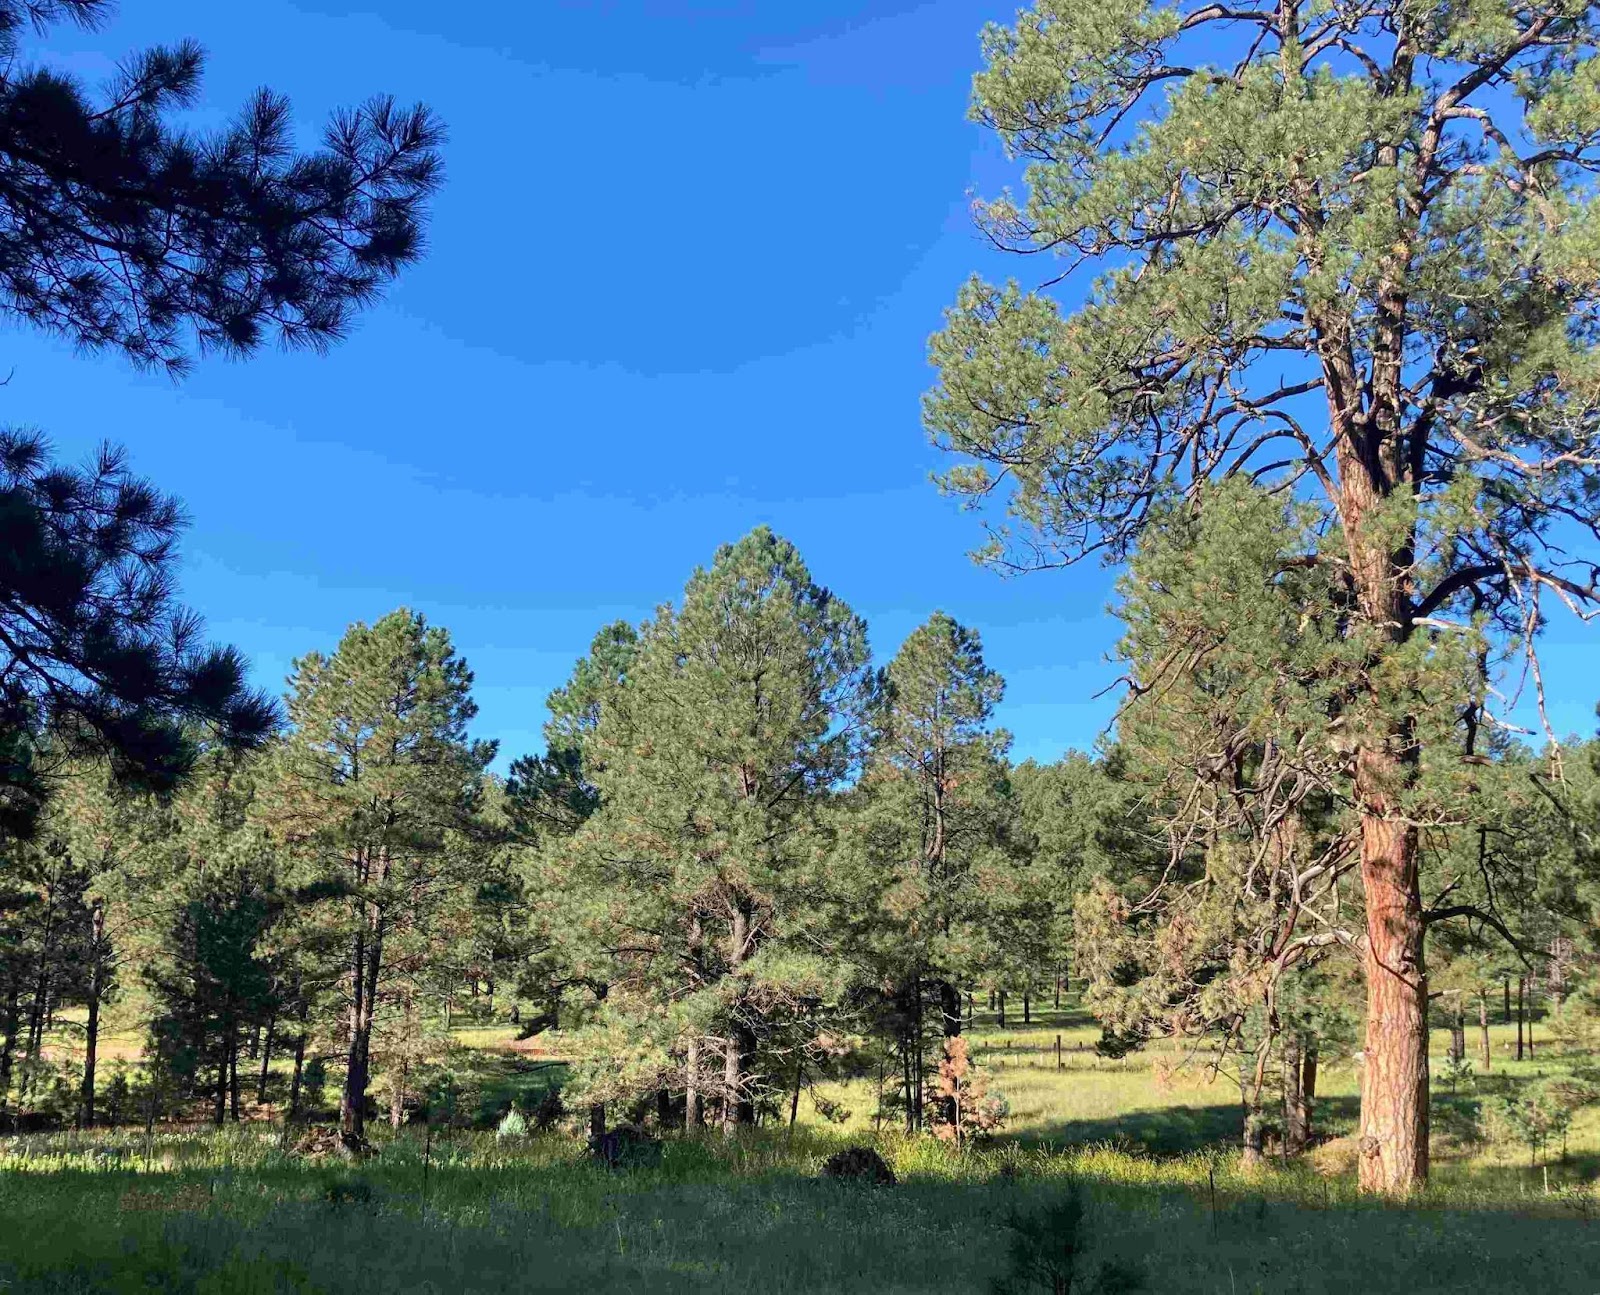 Une photo d'une forêt verdoyante de pins qui s'étend au loin sous un cield'un bleu éclatant. L'ensemble de la scène est charmant, vert etvibrant. Les plus grands pins ont une écorce orange pâle, tandis que lesplus petits ont une écorce noire, caractéristique des pins ponderosa, quichangent de couleur àmaturité.